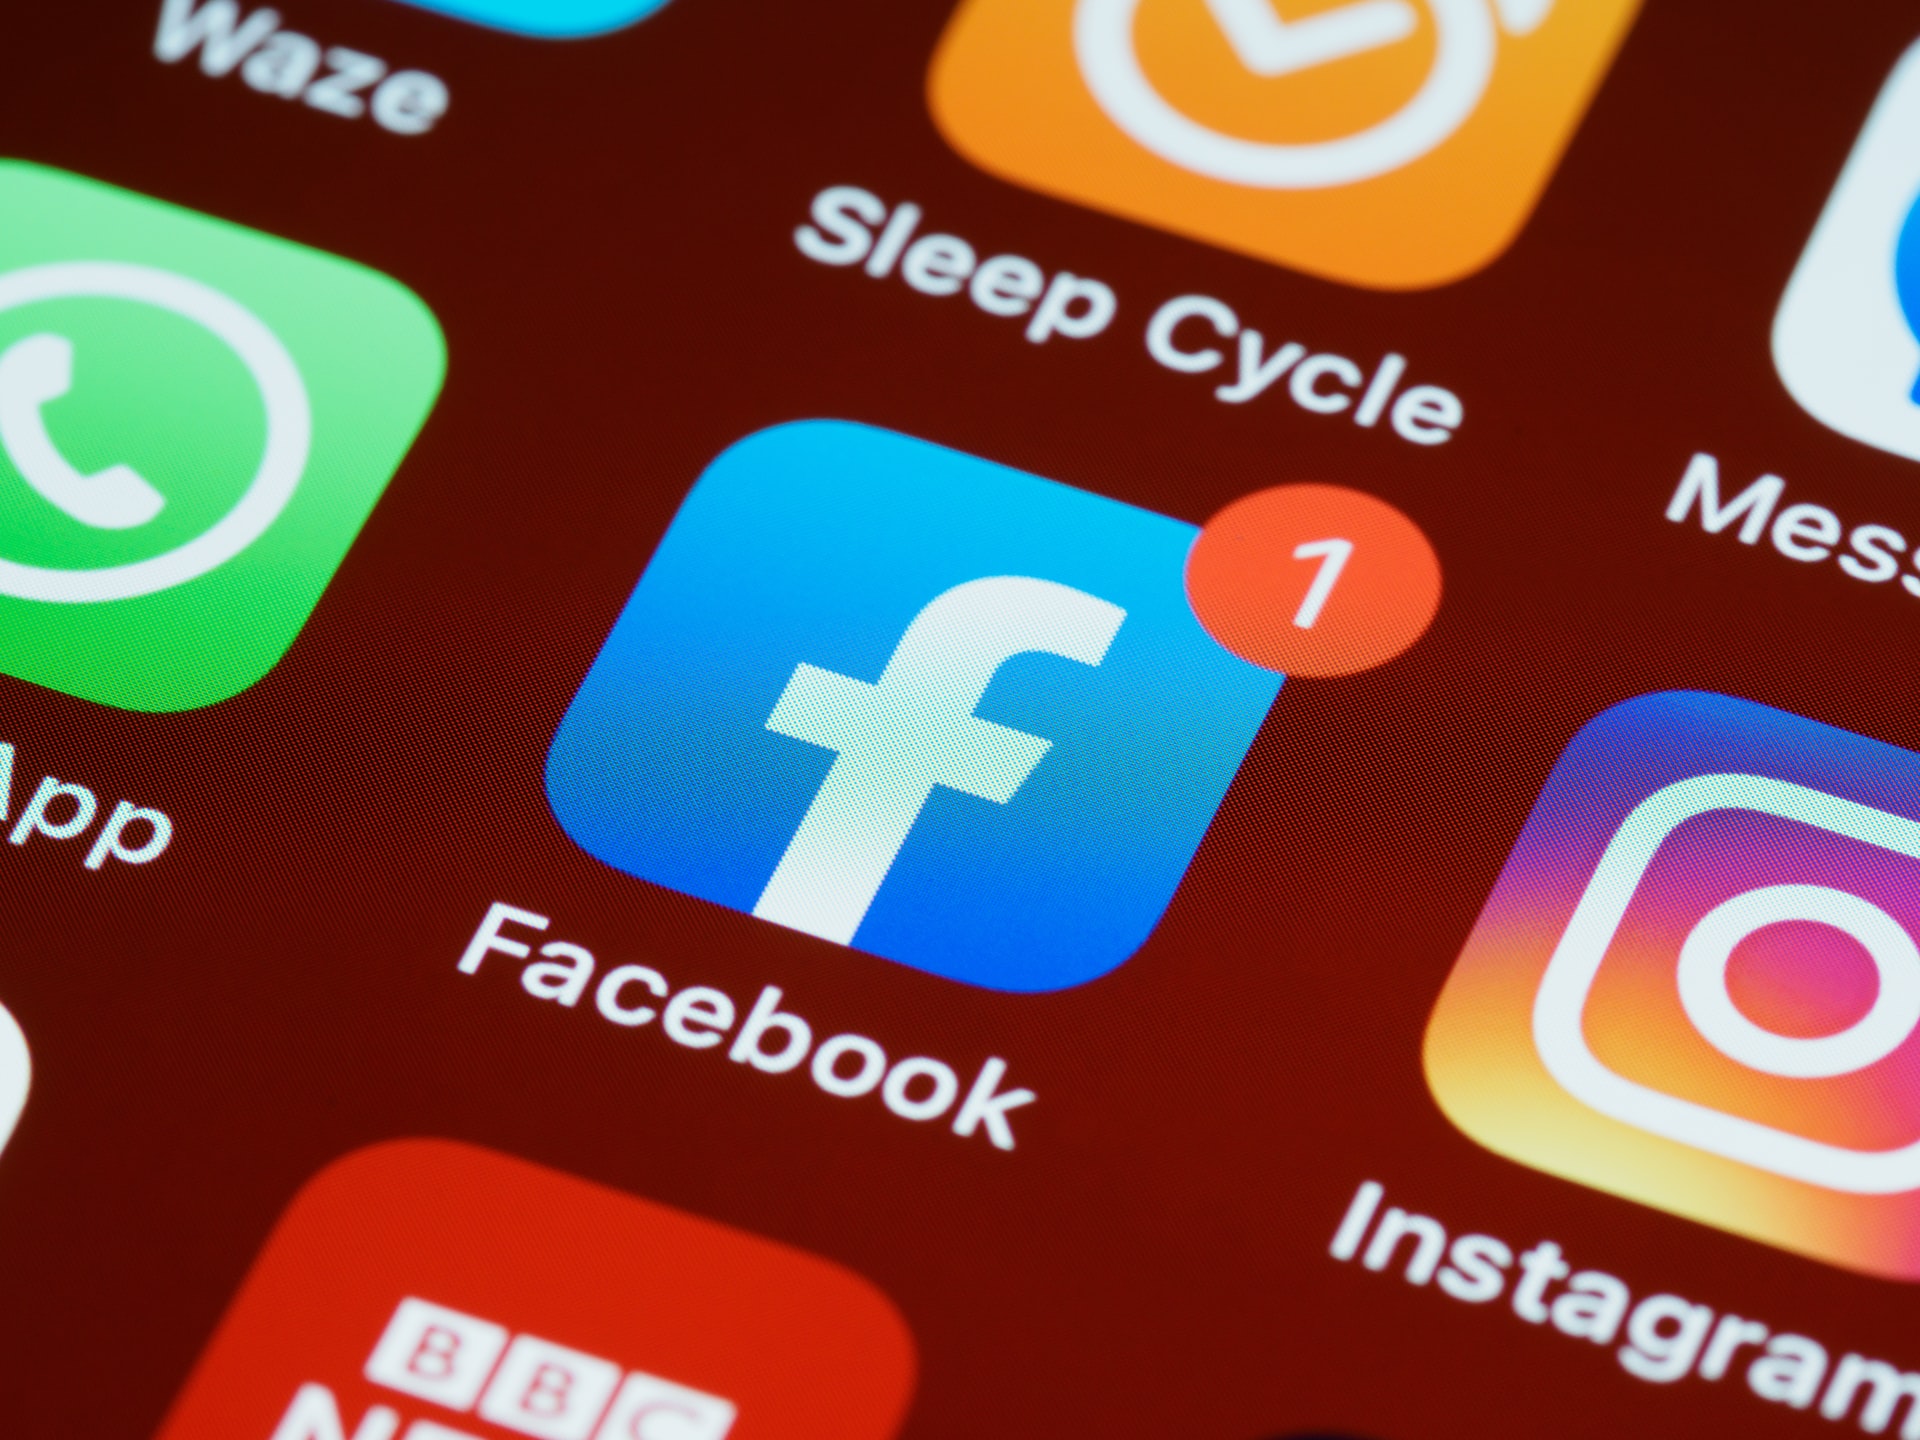 Facebook in Instagram grozita z ukinjanjem računov evropskim uporabnikom